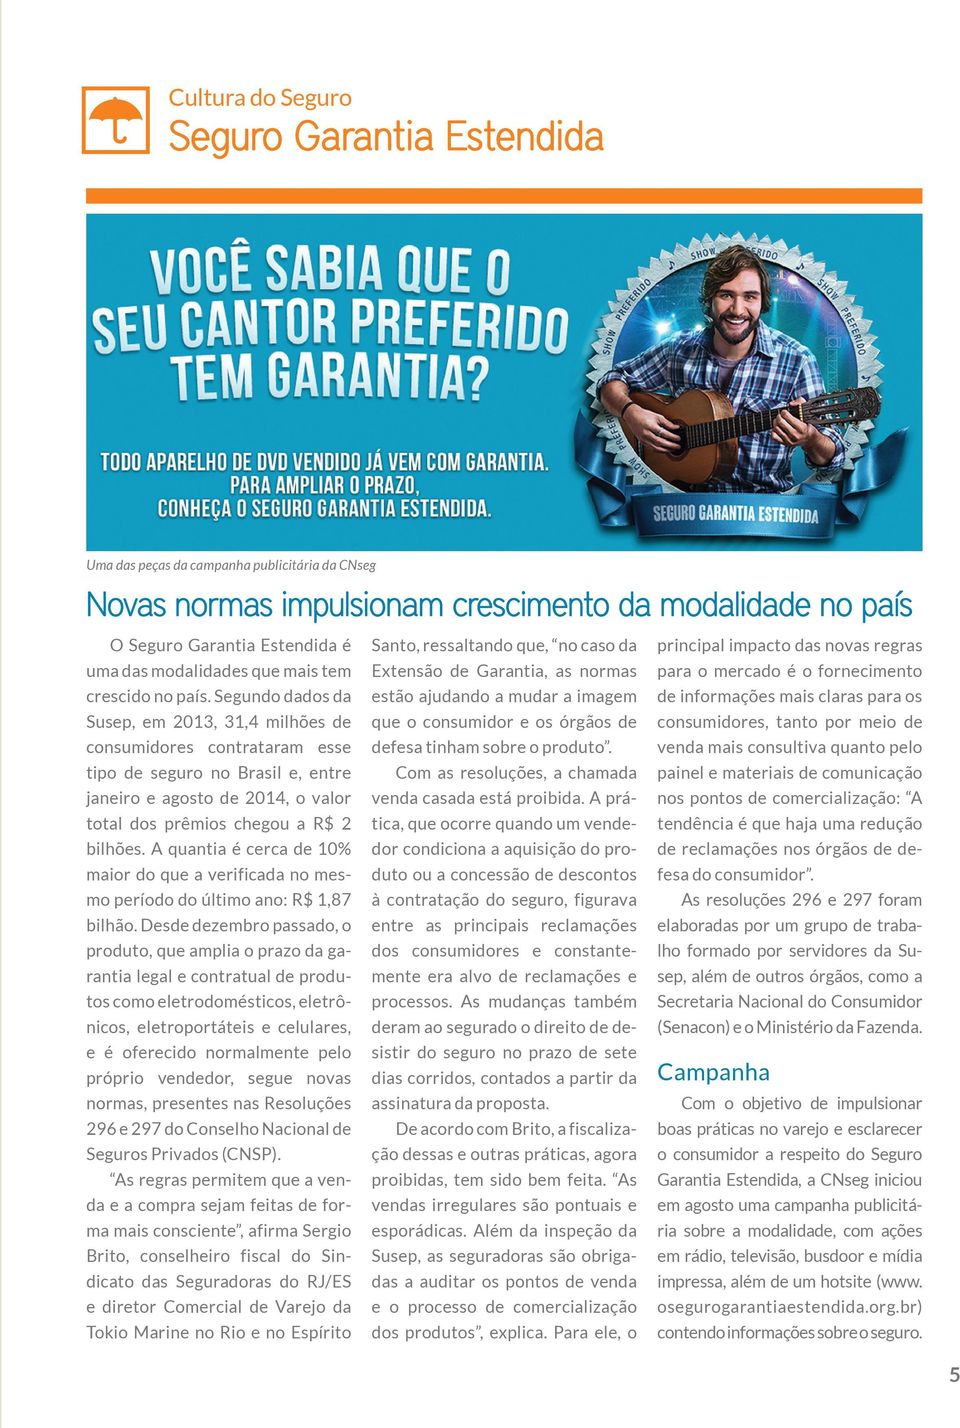 Segundo dados da Susep, em 2013, 31,4 milhões de consumidores contrataram esse tipo de seguro no Brasil e, entre janeiro e agosto de 2014, o valor total dos prêmios chegou a R$ 2 bilhões.